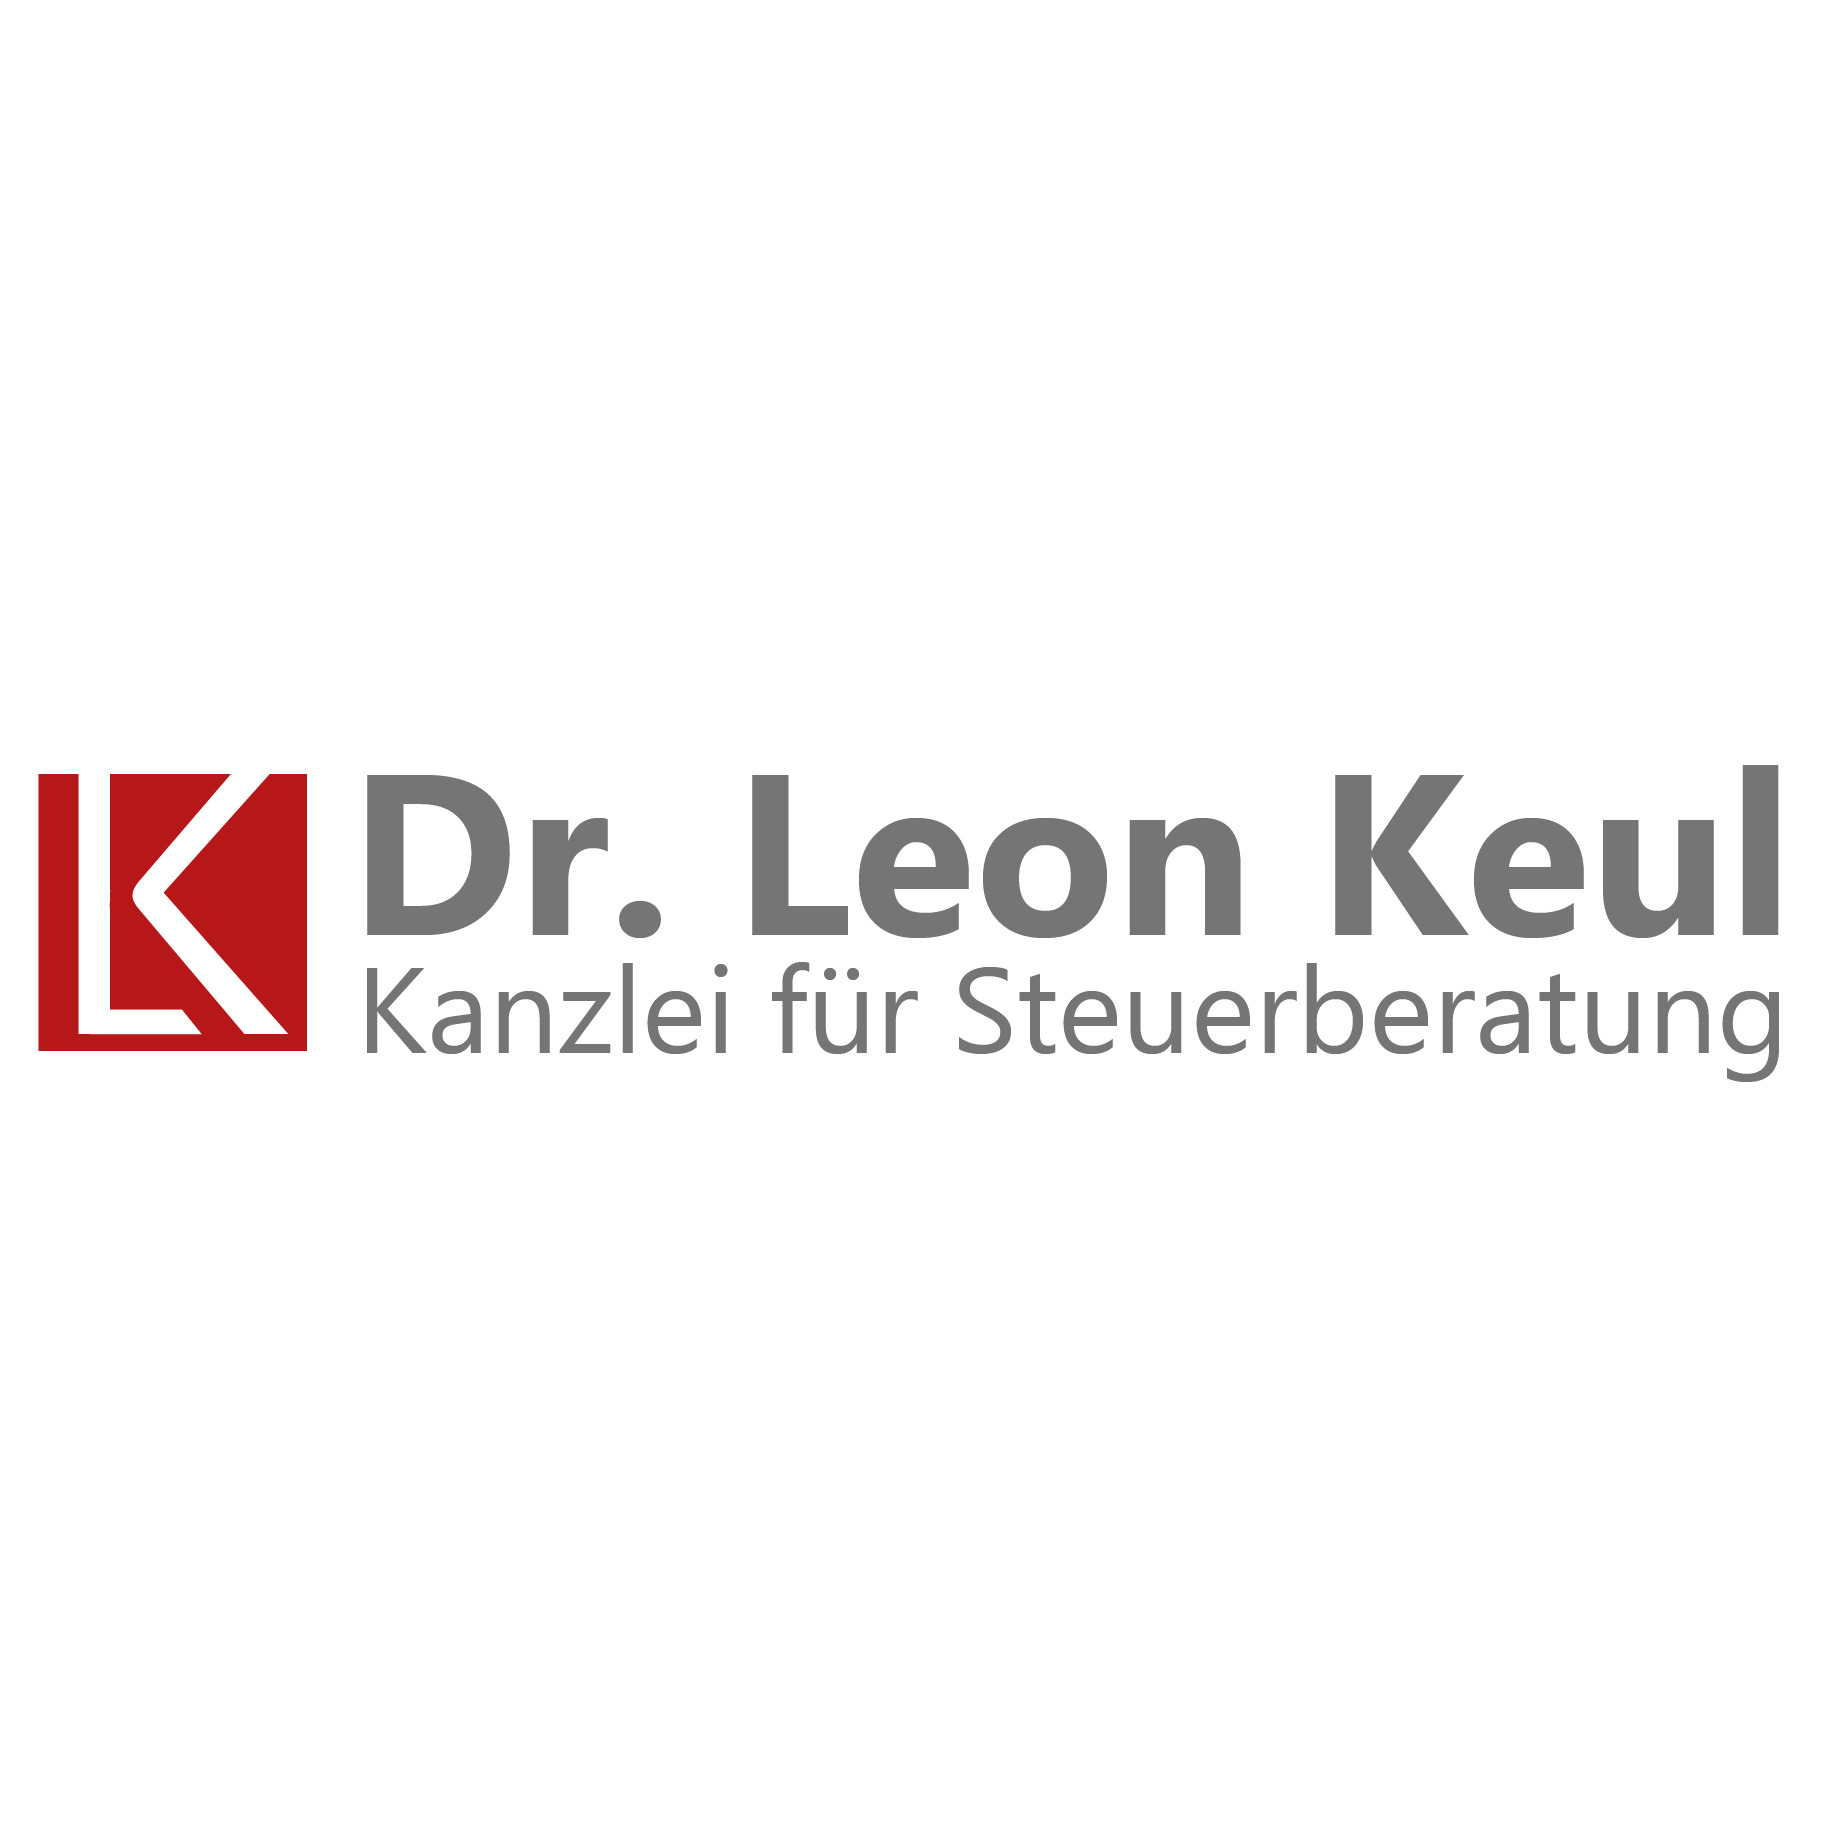 Dr. Leon Keul - Kanzlei für Steuerberatung in Potsdam - Logo